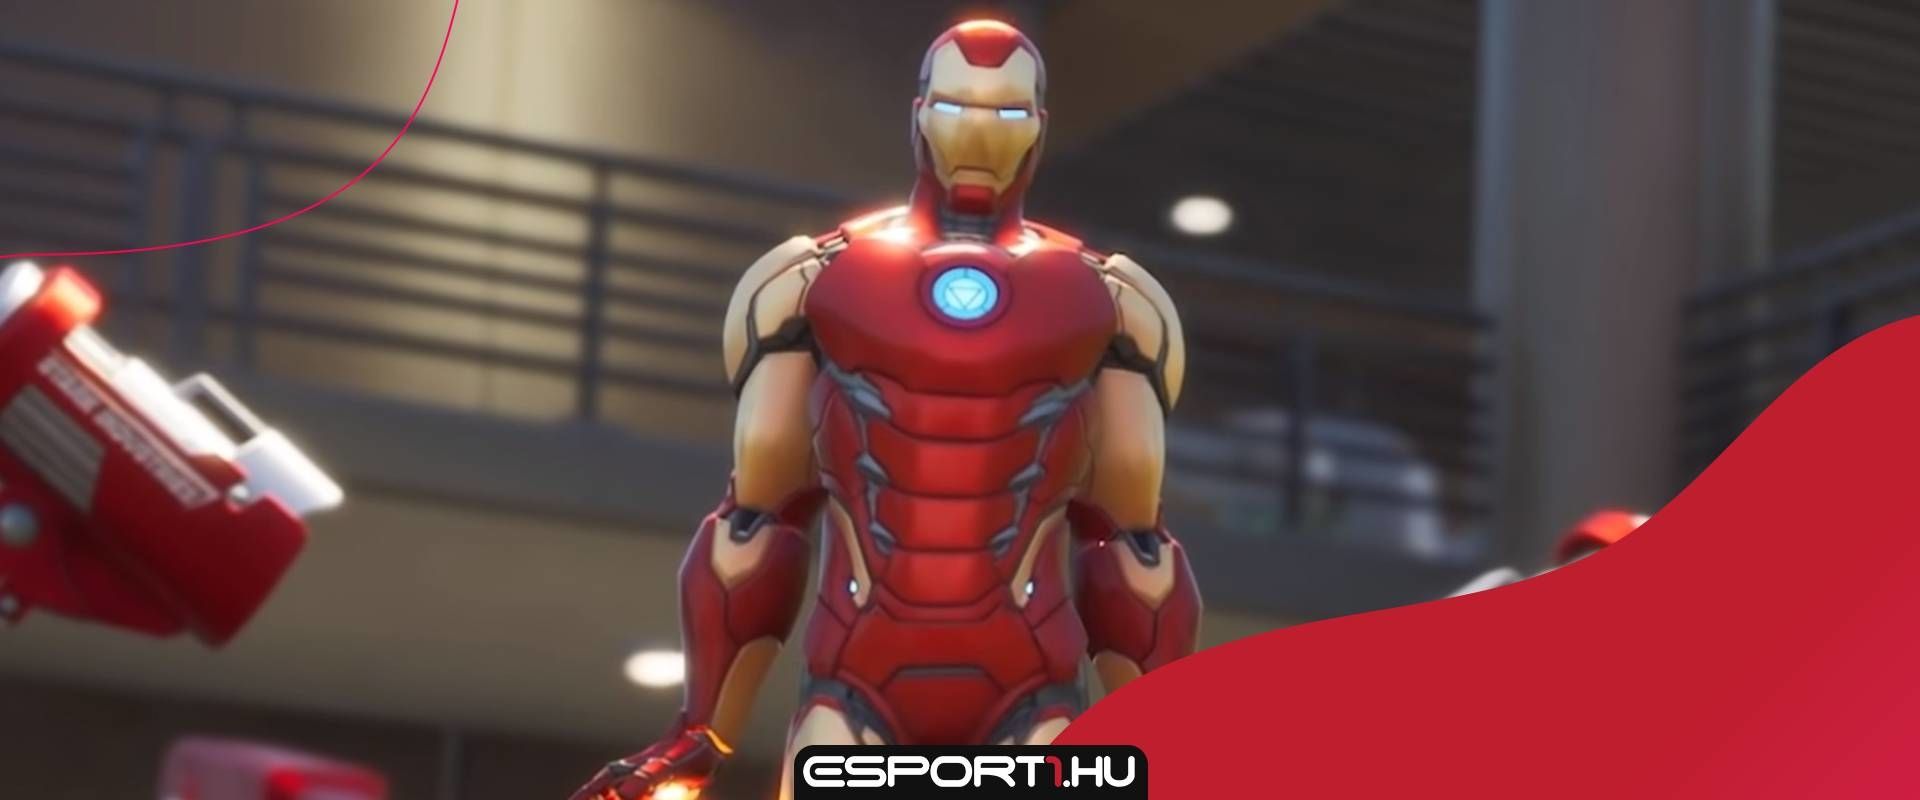 Tony Stark féle jetpack érkezhet a játékba a következő frissítéssel